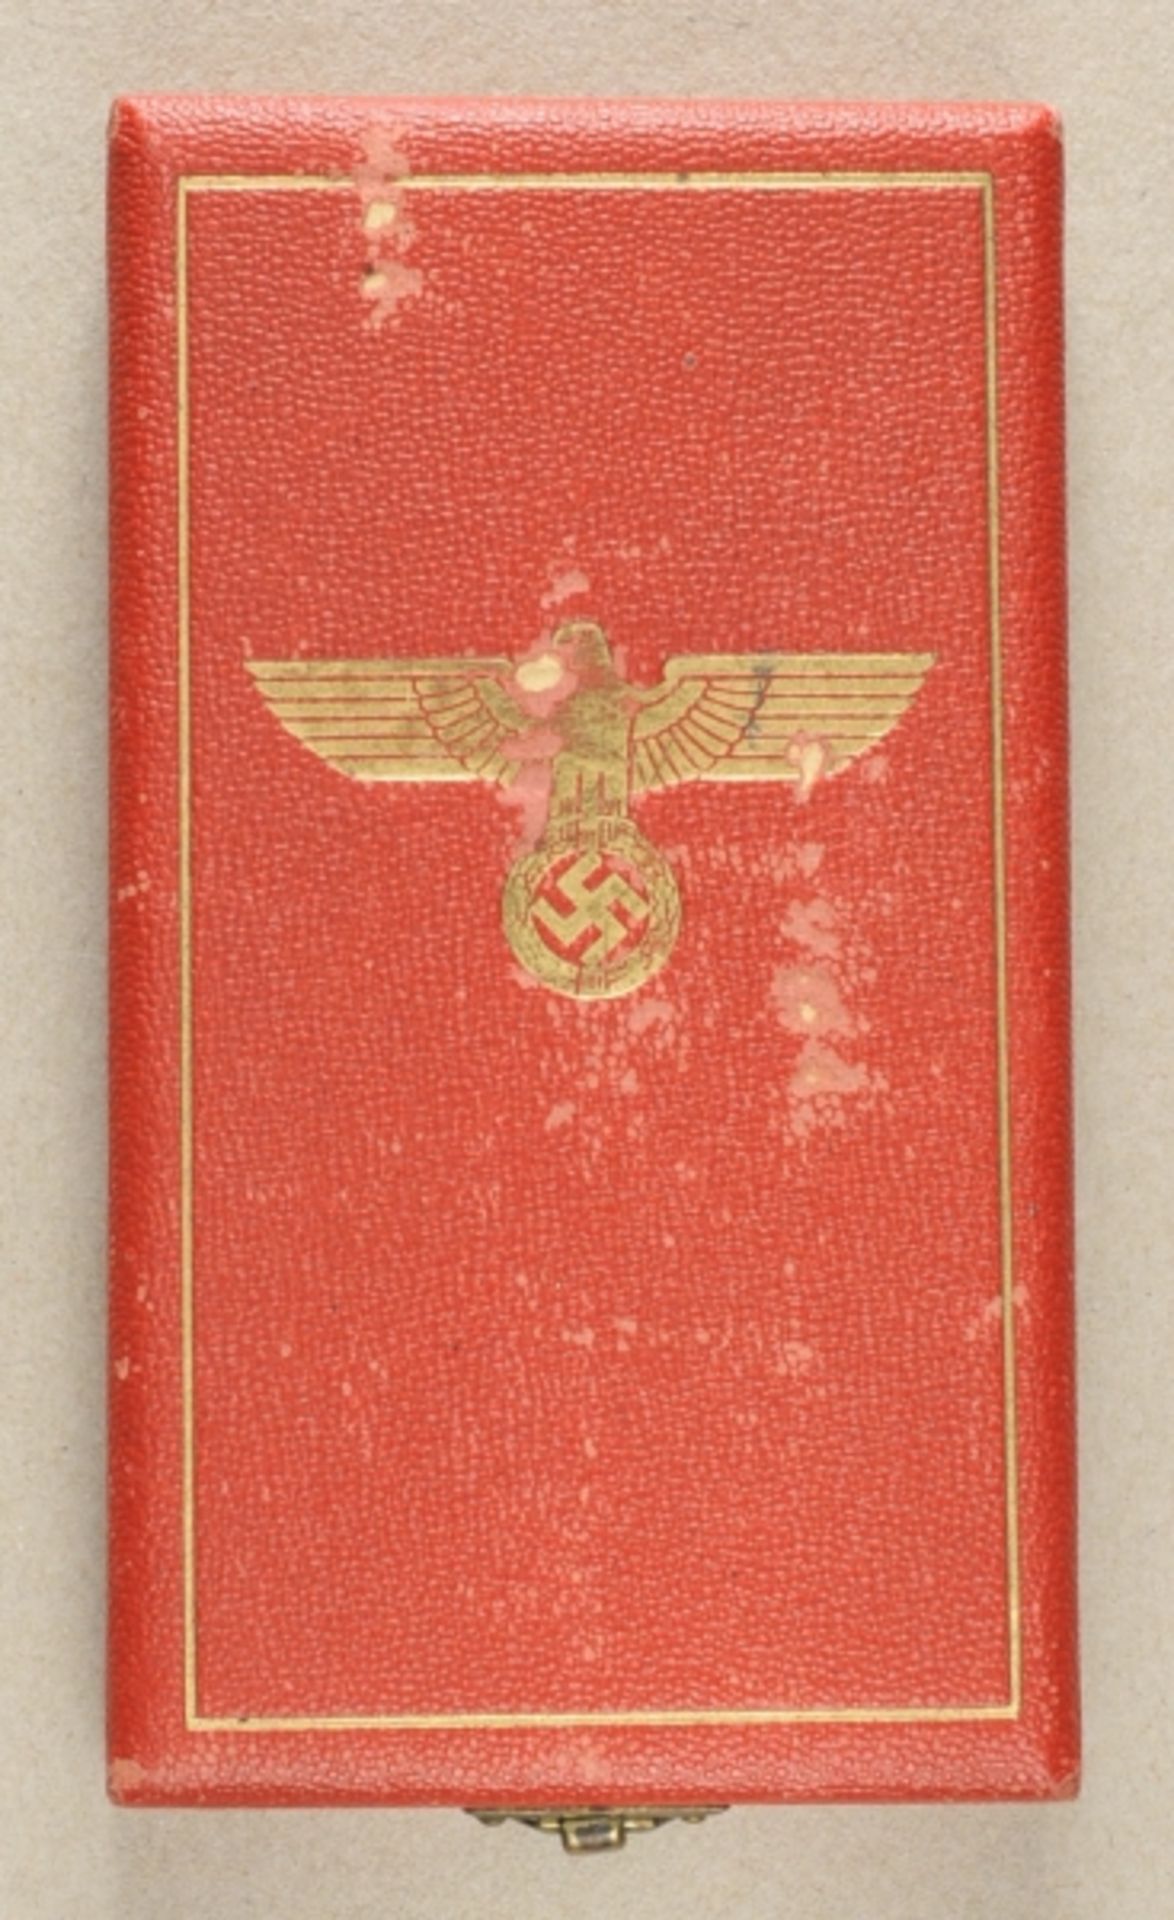 1.2.) Deutsches Reich (1933-45)Deutscher Adler Orden, 5. Klasse mit Schwertern Etui.Rotes Etui,